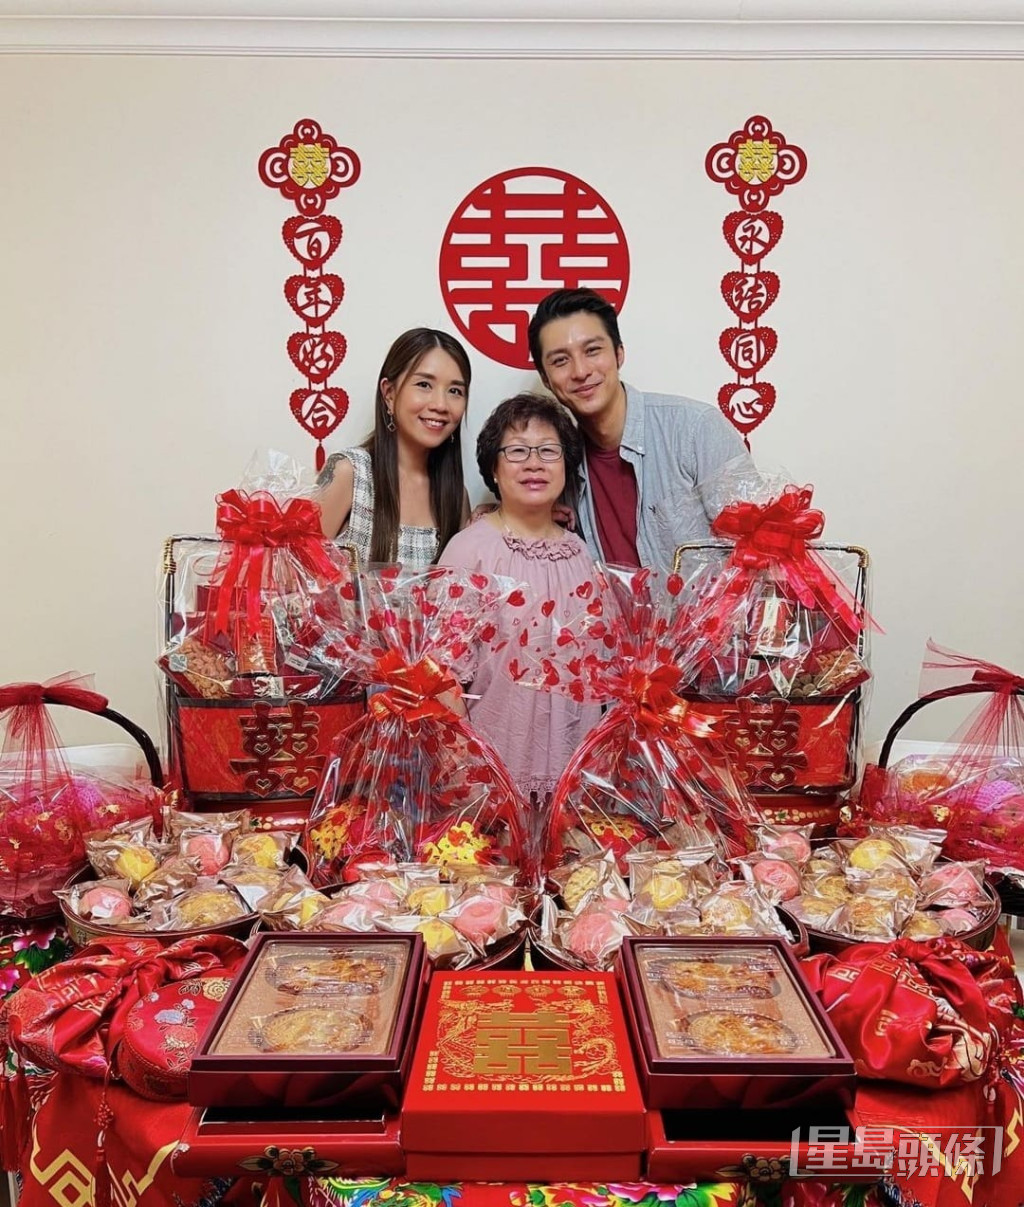 黃嘉樂與攝影師女友Samantha（江惠賢）求婚成功，亦跟足傳統做過大禮儀式，滿枱物資包括椰子籃、海味、生果、大量喜餅連龍鳳餅都齊備。